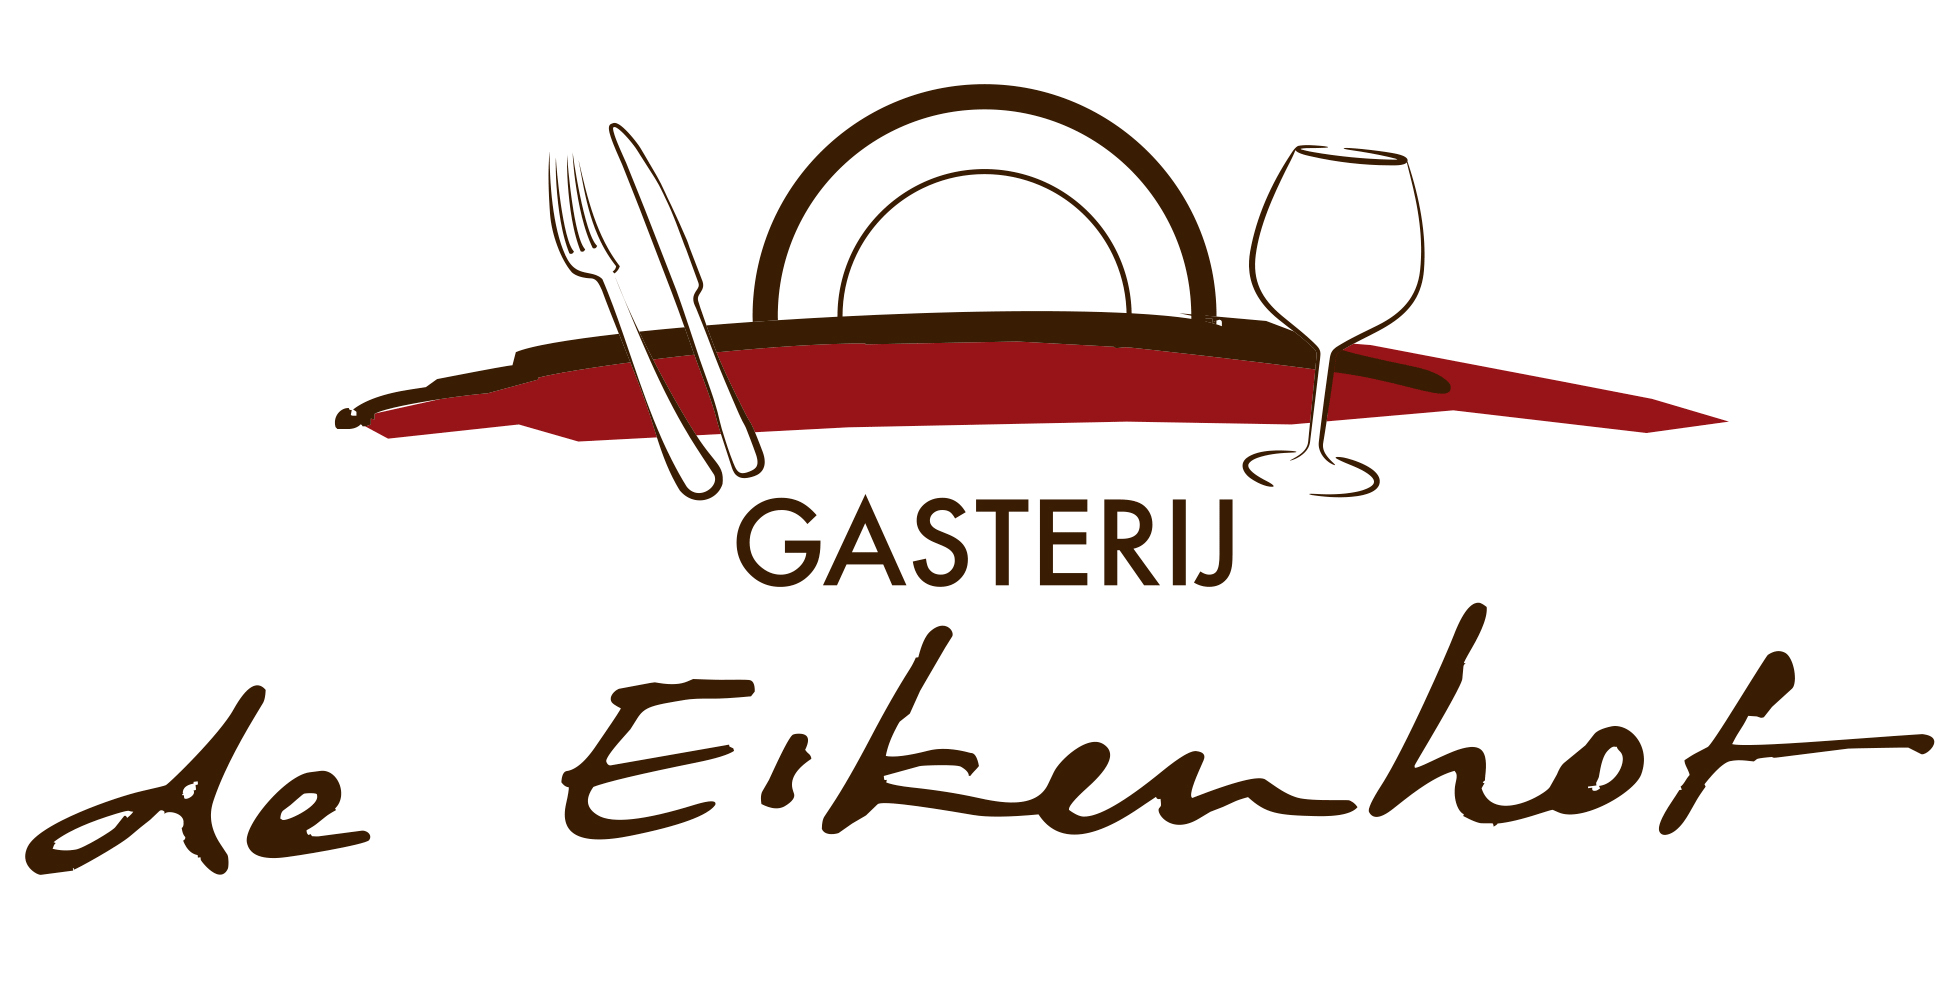 Gasterij de Eikenhof